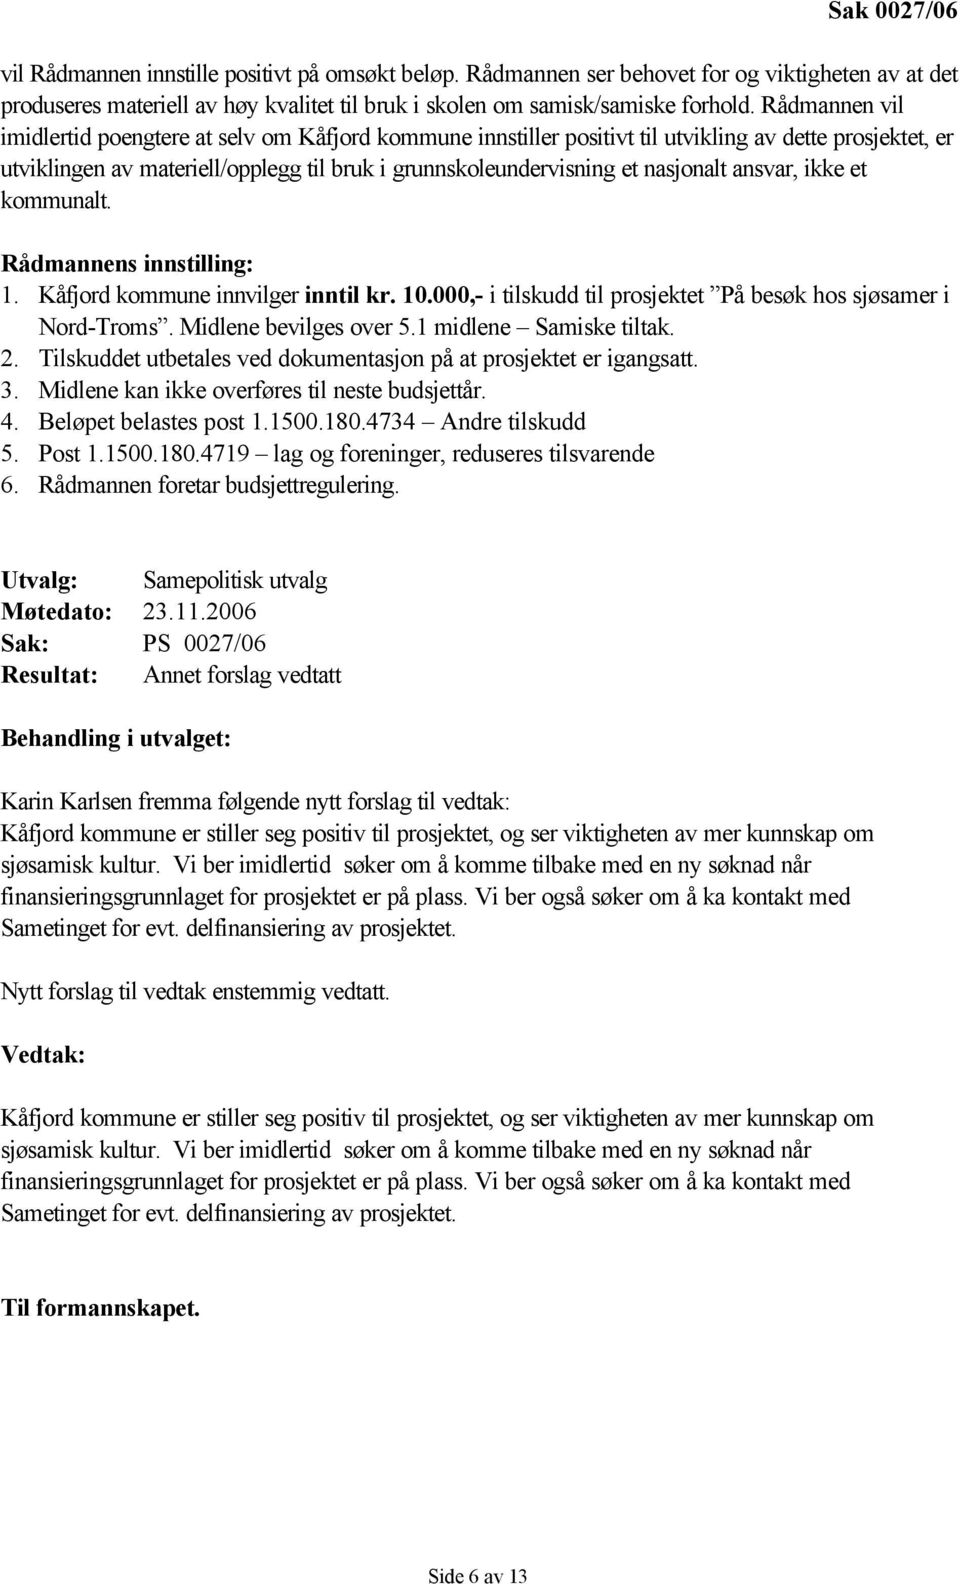 kommunalt. Rådmannens innstilling: 1. innvilger inntil kr. 10.000,- i tilskudd til prosjektet På besøk hos sjøsamer i Nord-Troms. Midlene bevilges over 5.1 midlene Samiske tiltak. 2.